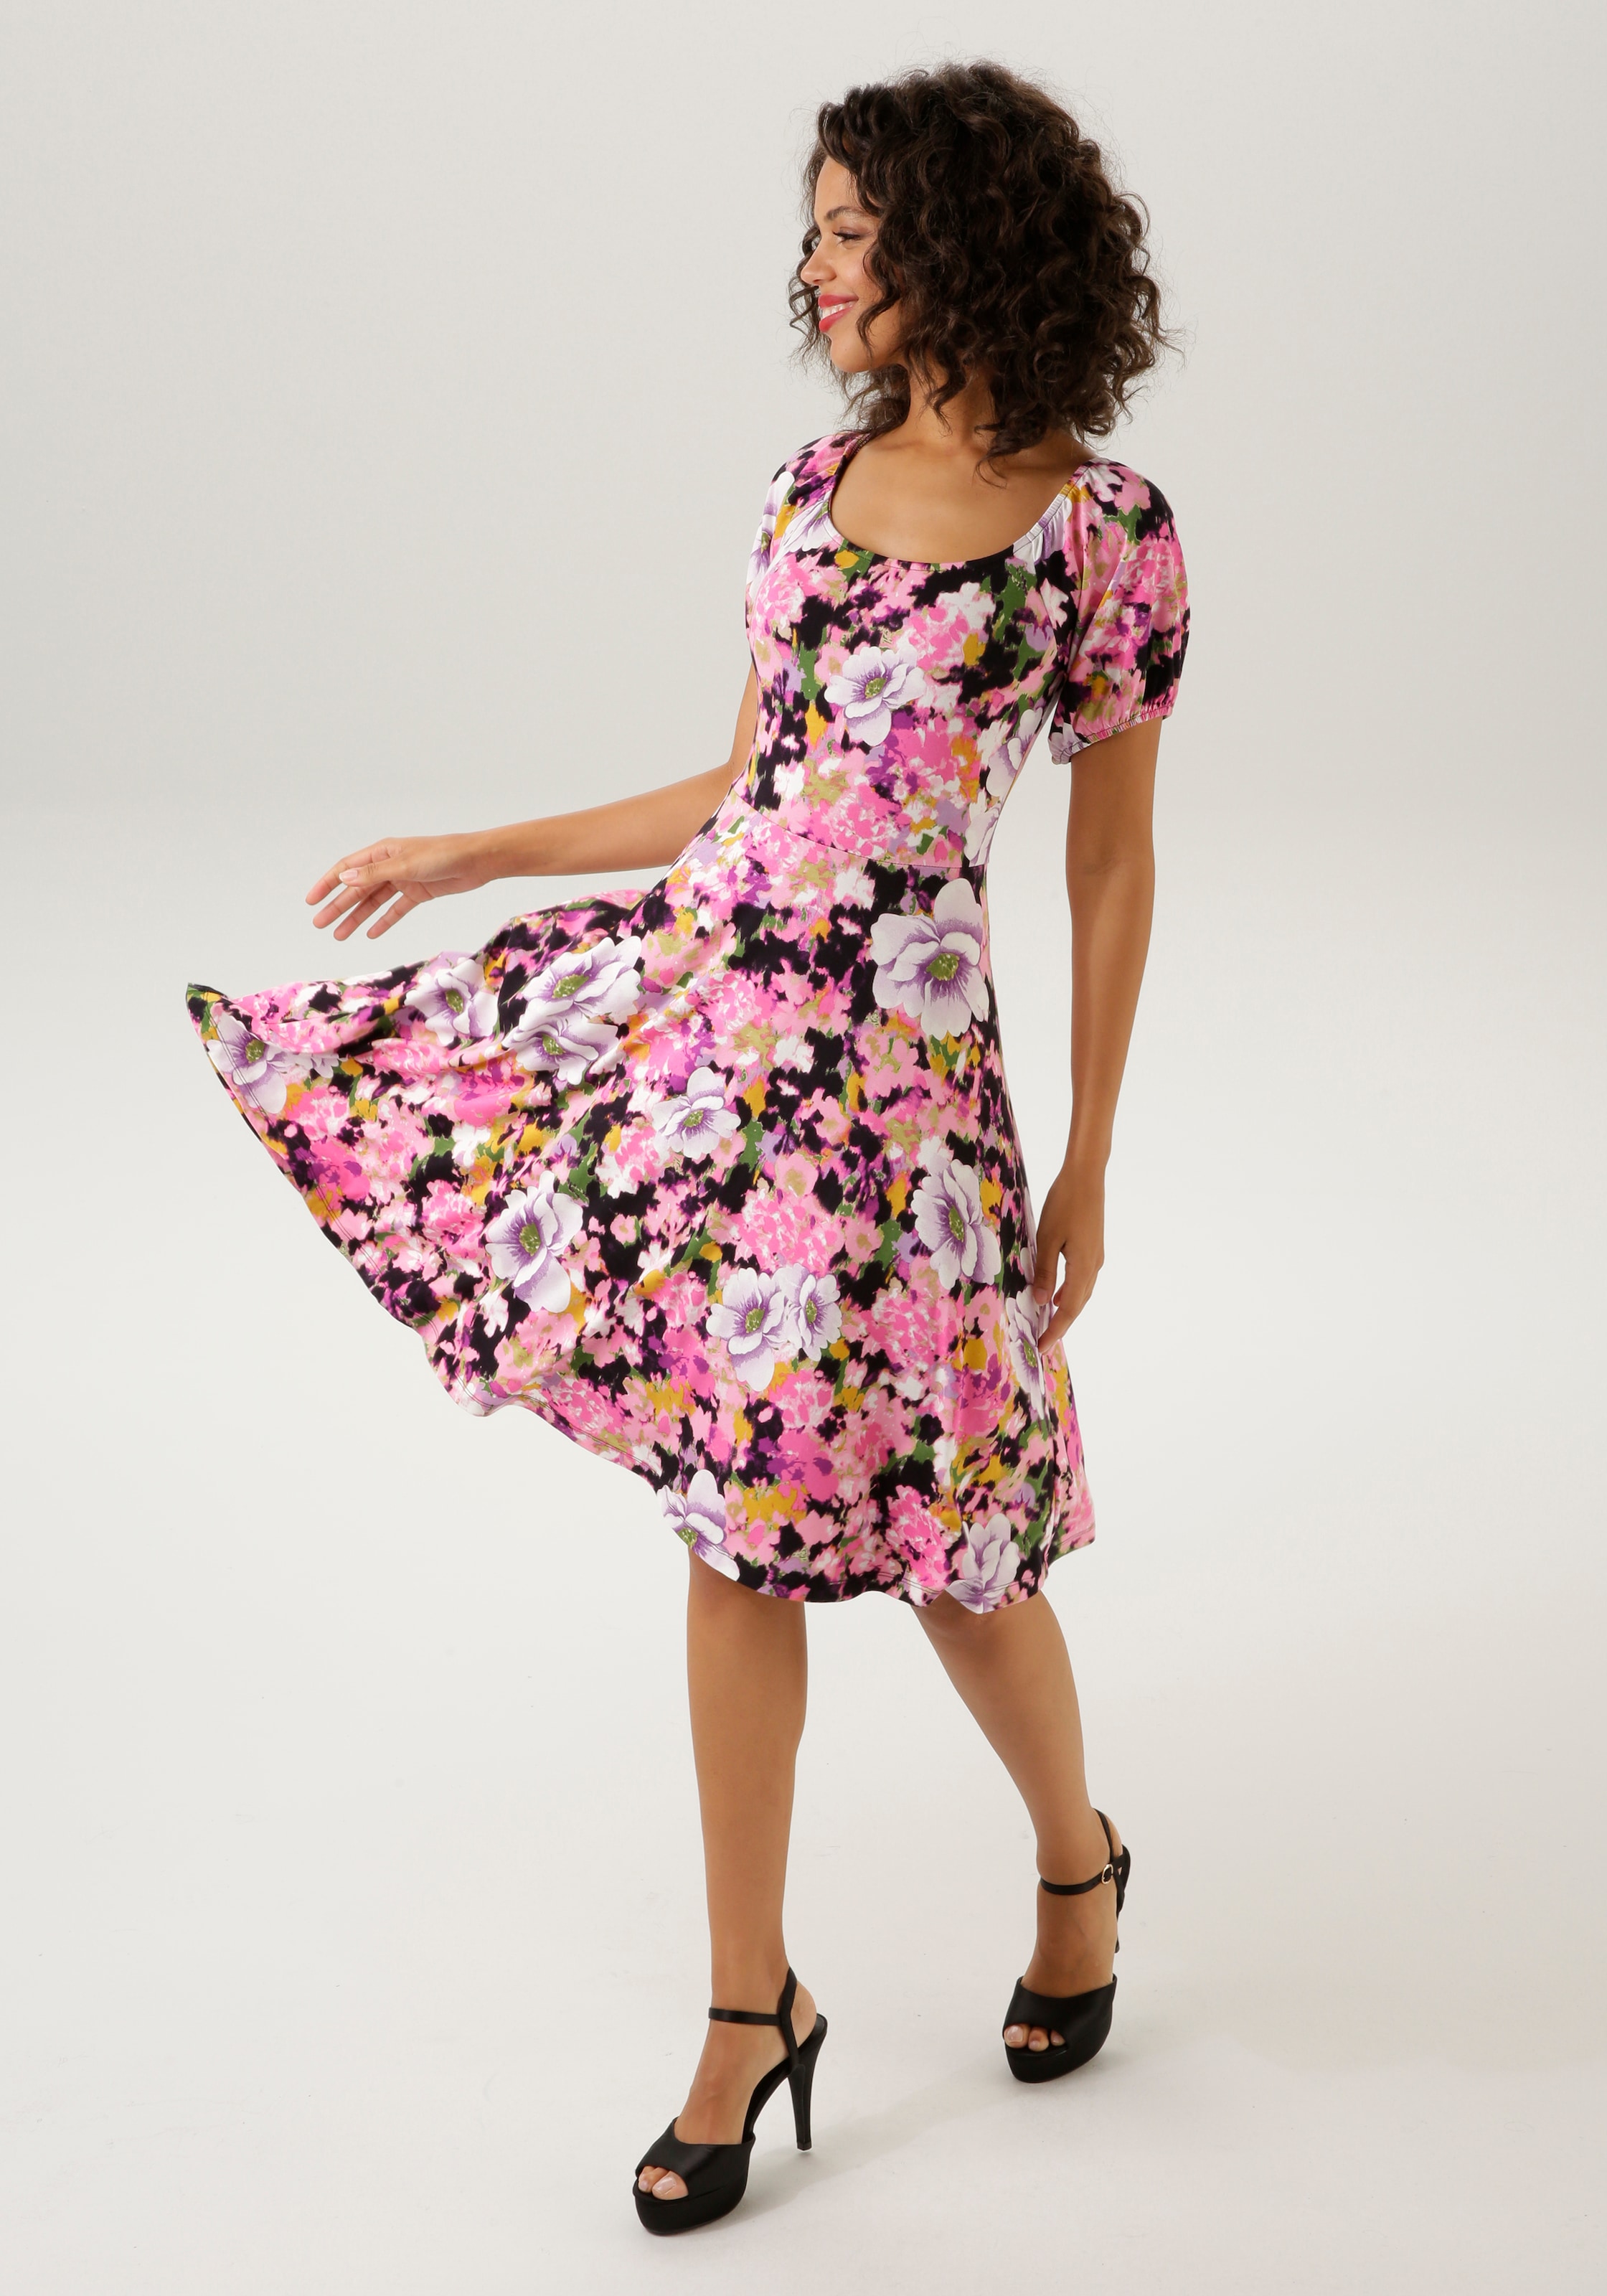 Shop OTTO ein CASUAL NEUE Teil - farbenfrohem jedes im Aniston Sommerkleid, Online mit KOLLEKTION Blumendruck - Unikat